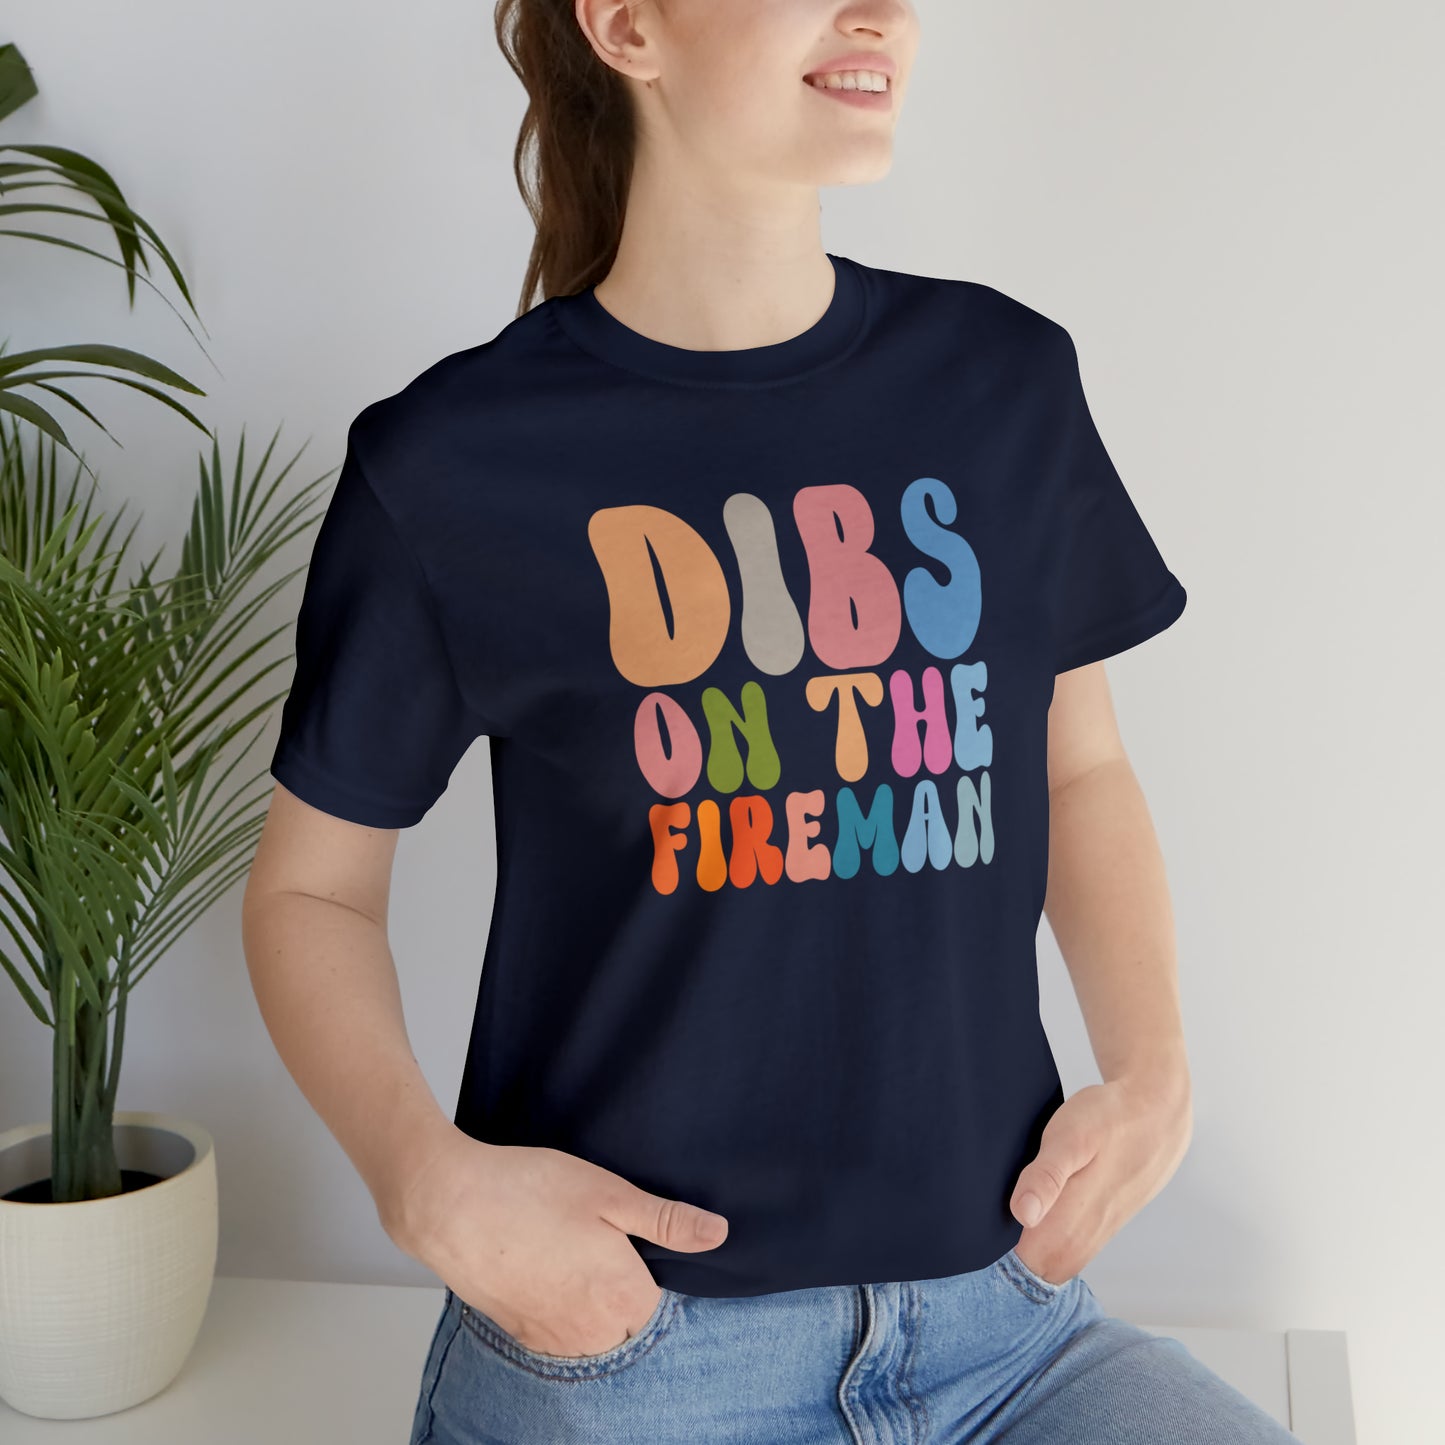 Dibs on the Fireman Shirt, Shirt for Firewoman, Fireman Wife Shirt, Firewoman Shirt, Fireman Girlfriend Shirt, T401